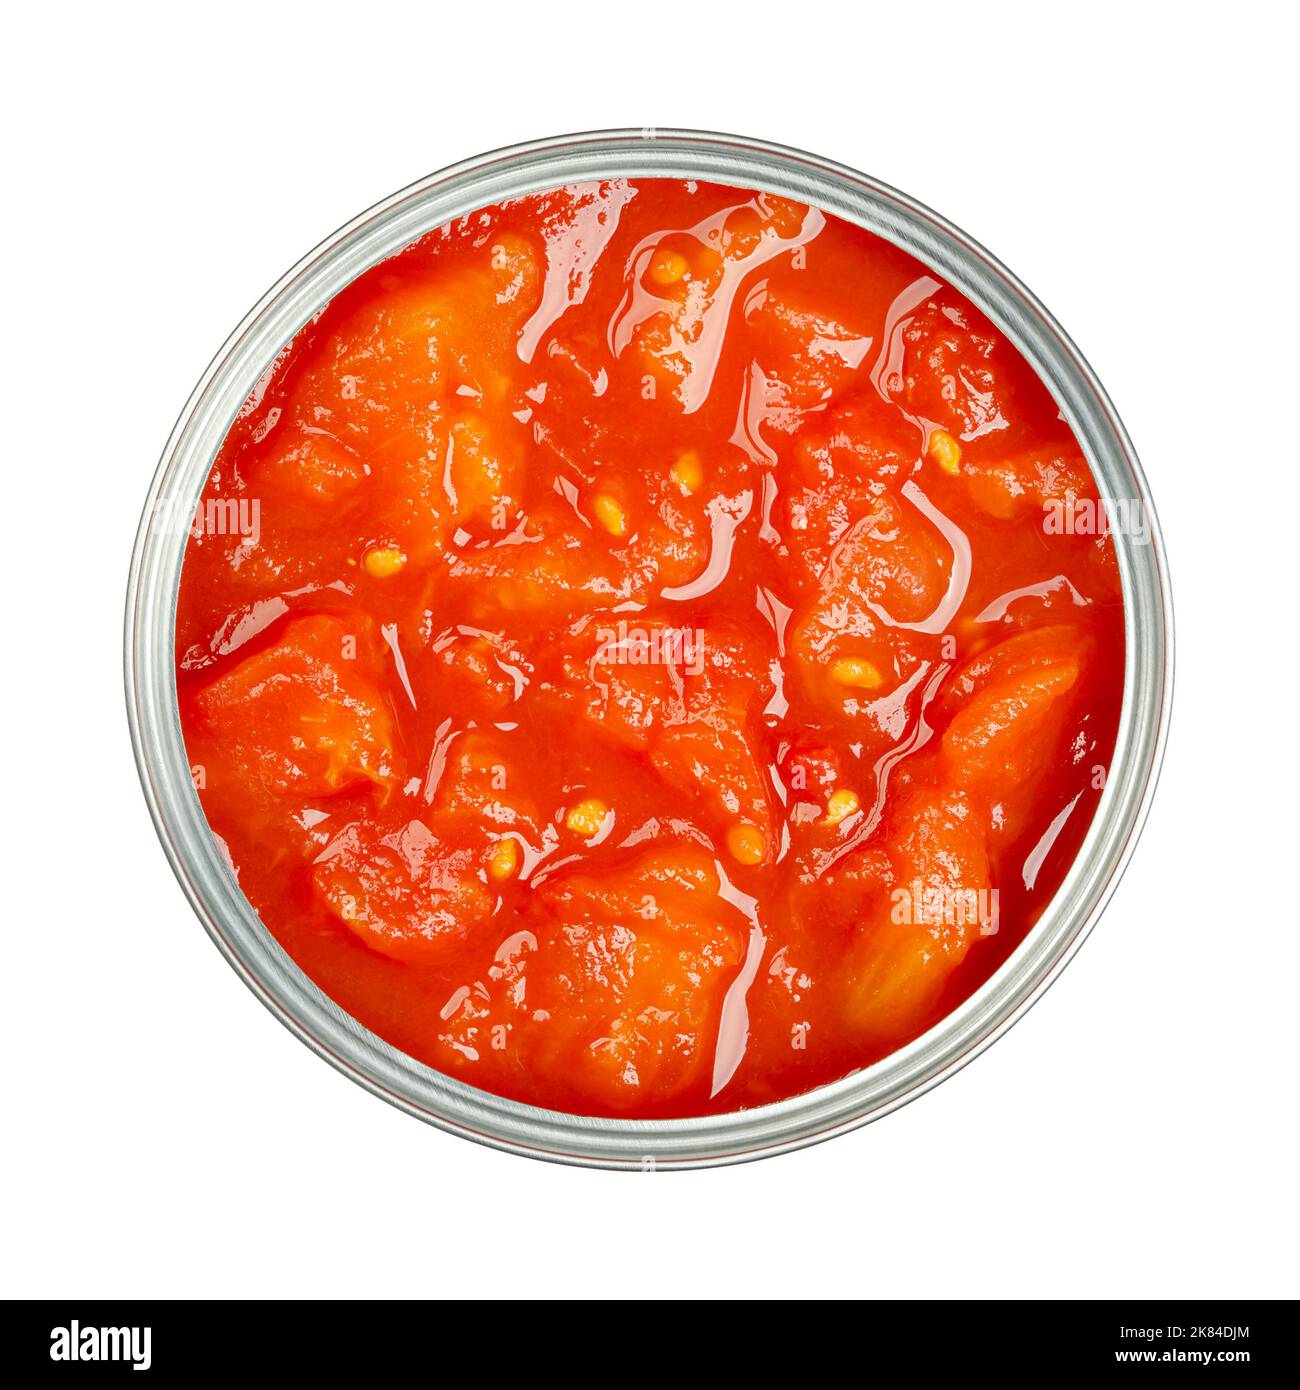 Tomaten in Dosen, gewürfelt, mit Tomatenmark, in einer geöffneten Dose. Gehackte Tomaten und Tomatensauce. Tomatenstücke, in einer Dose versiegelt. Stockfoto